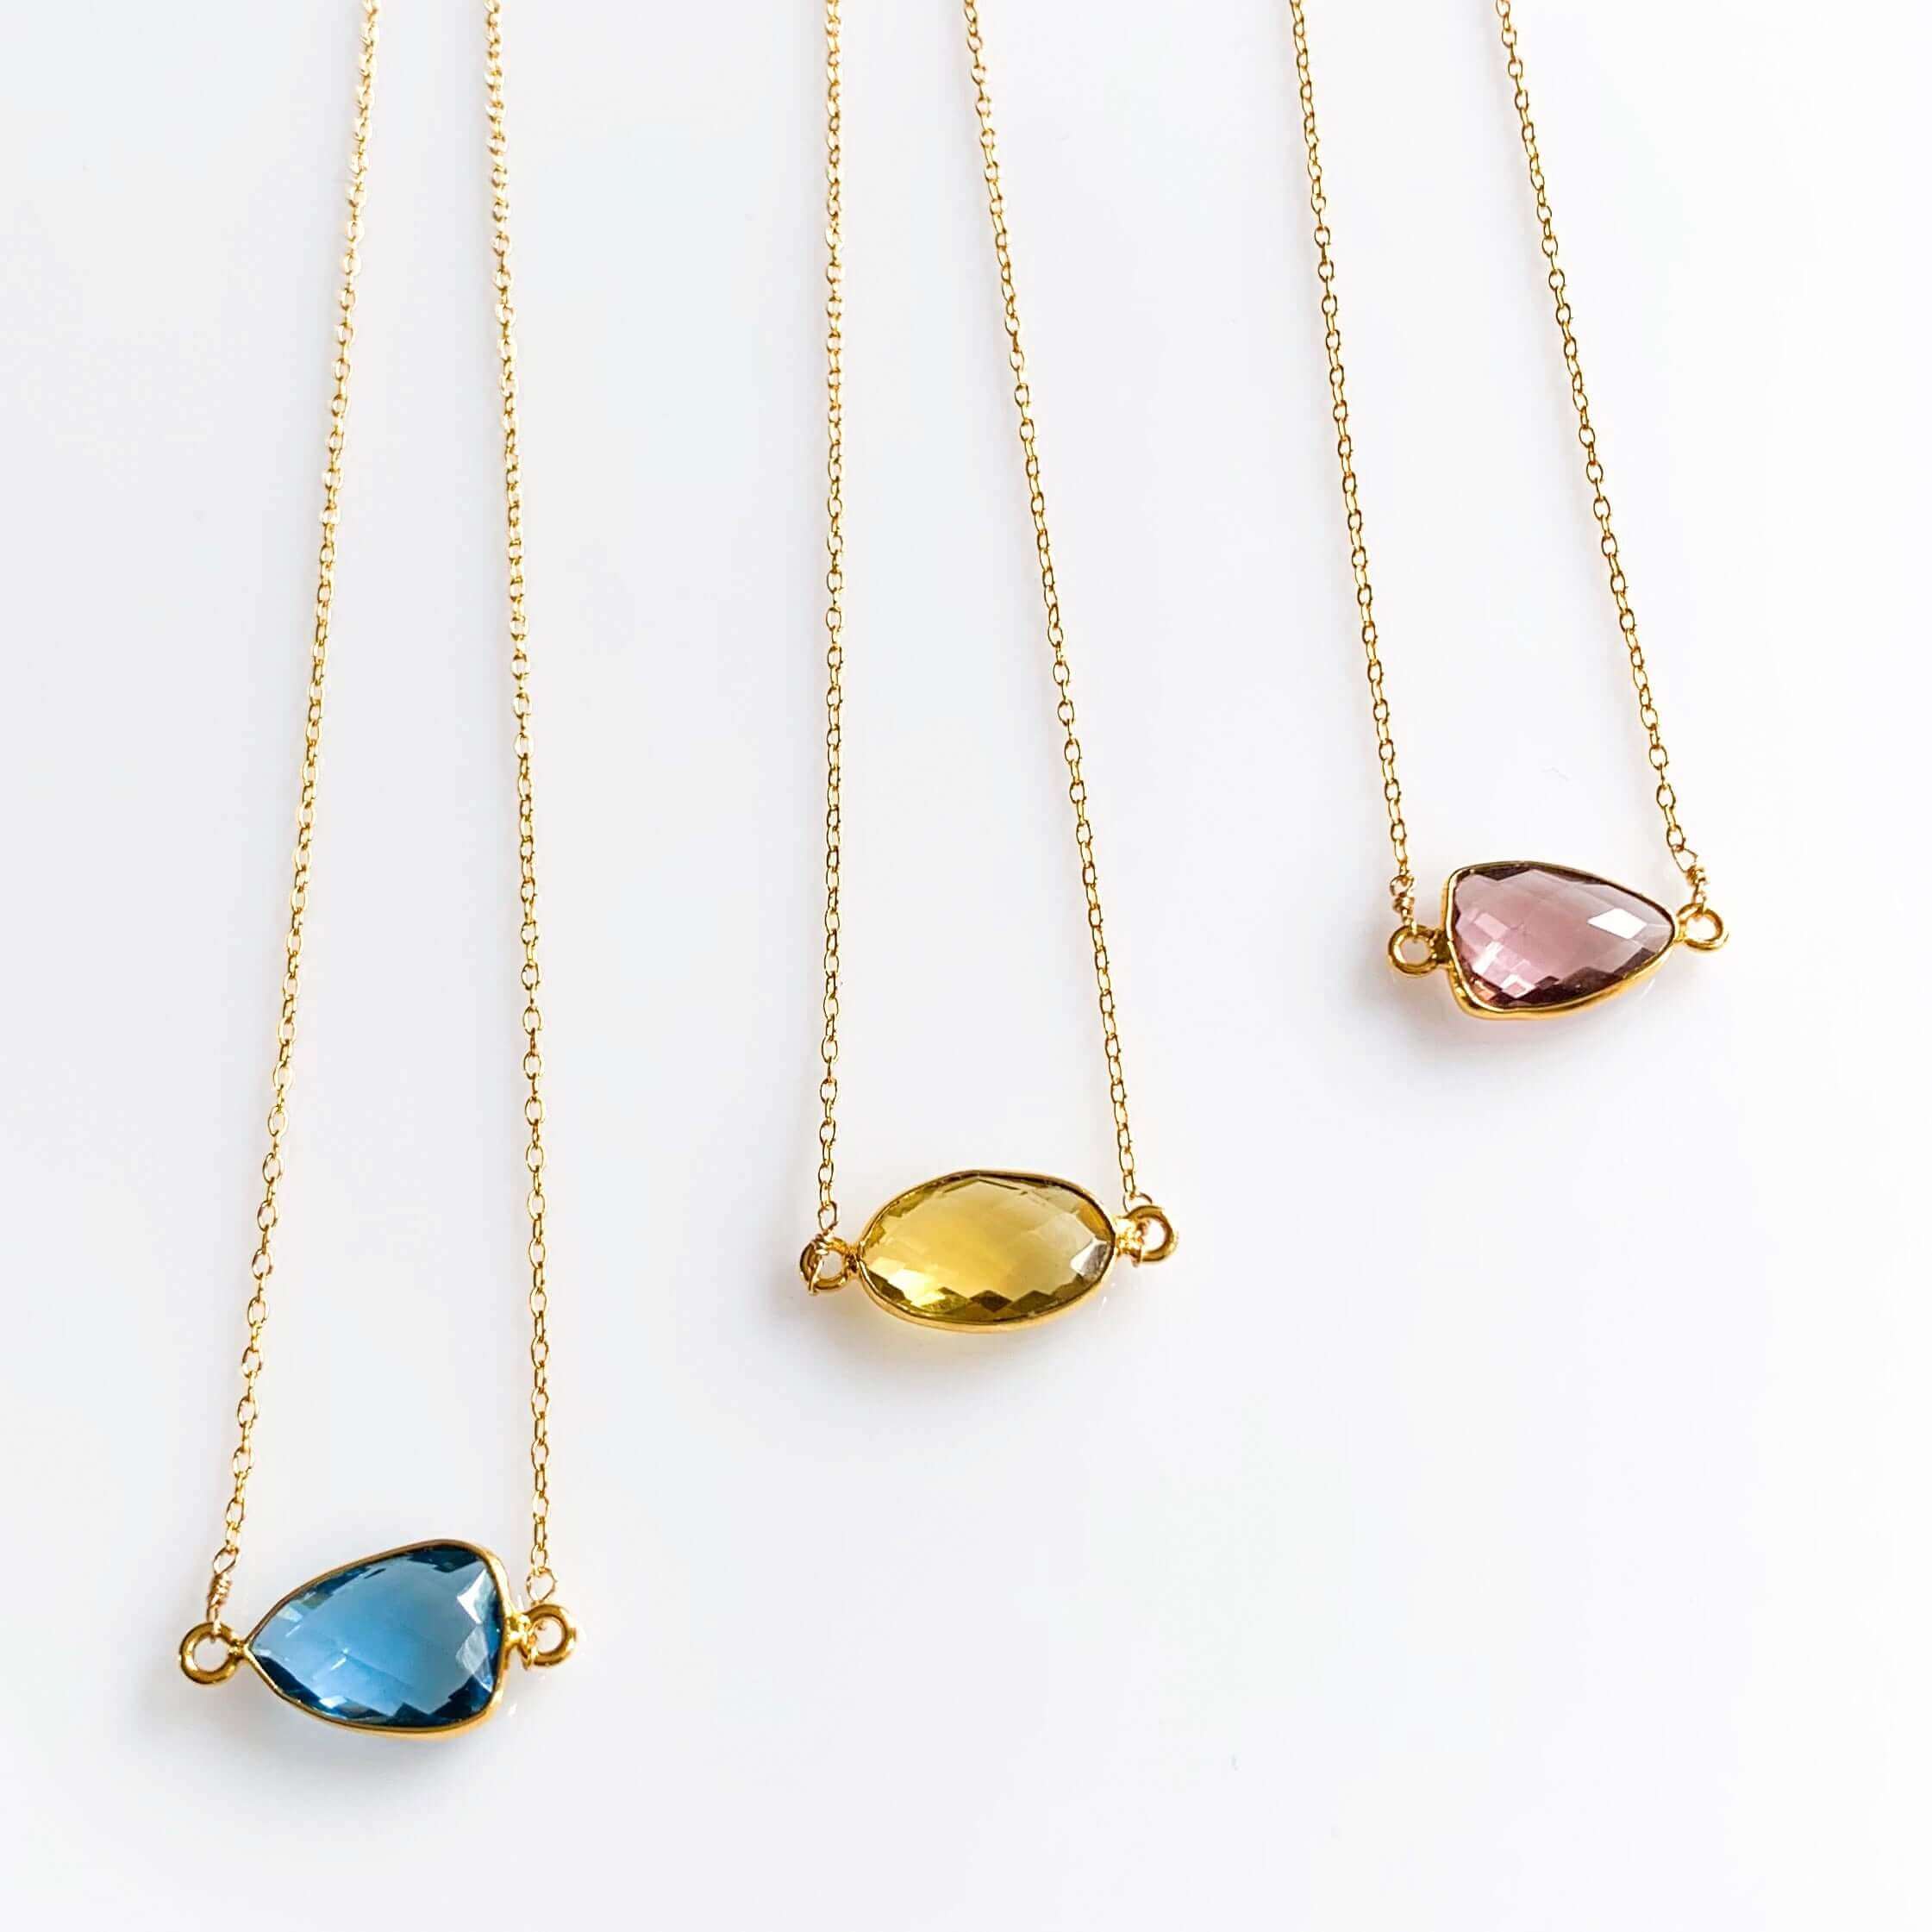 Colorful Bezel-Set Gemstones in a 14k Gold Necklace